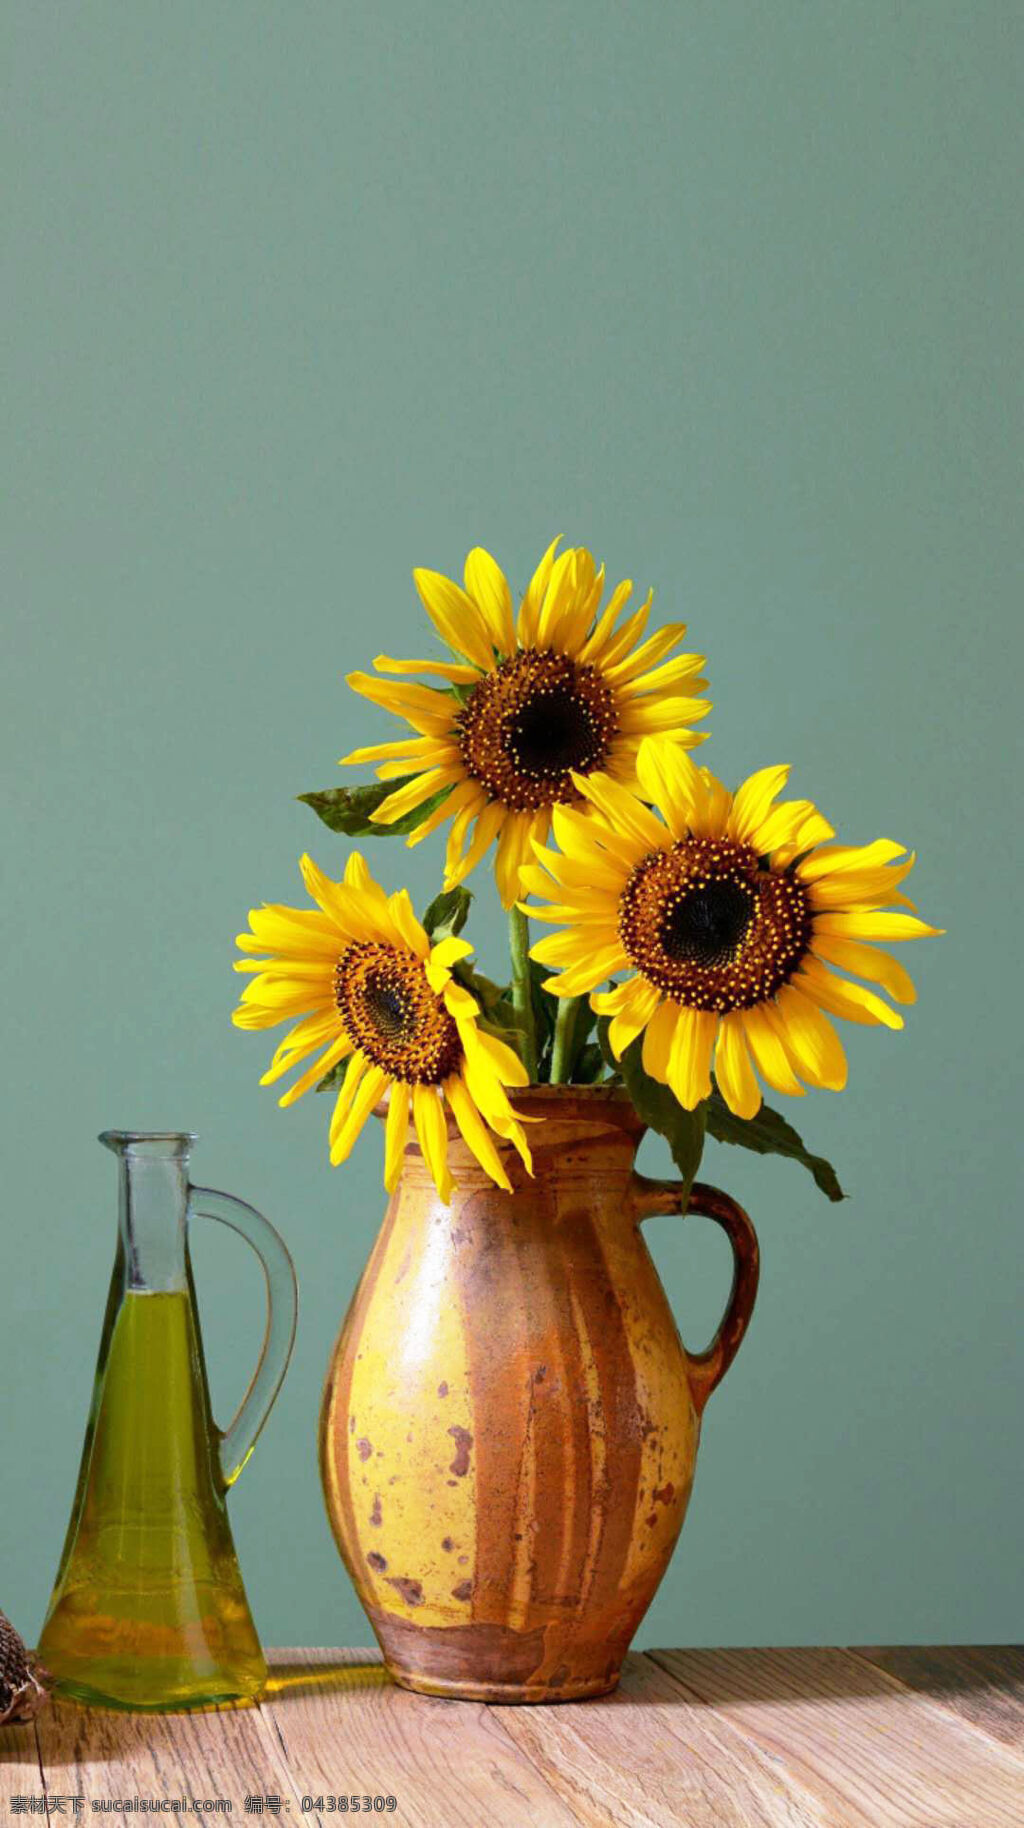 向日葵插花 黄色的向日葵 美丽的向日葵 清新的向日葵 玻璃瓶 木桌 室内摆放 房间装饰 生活百科 娱乐休闲